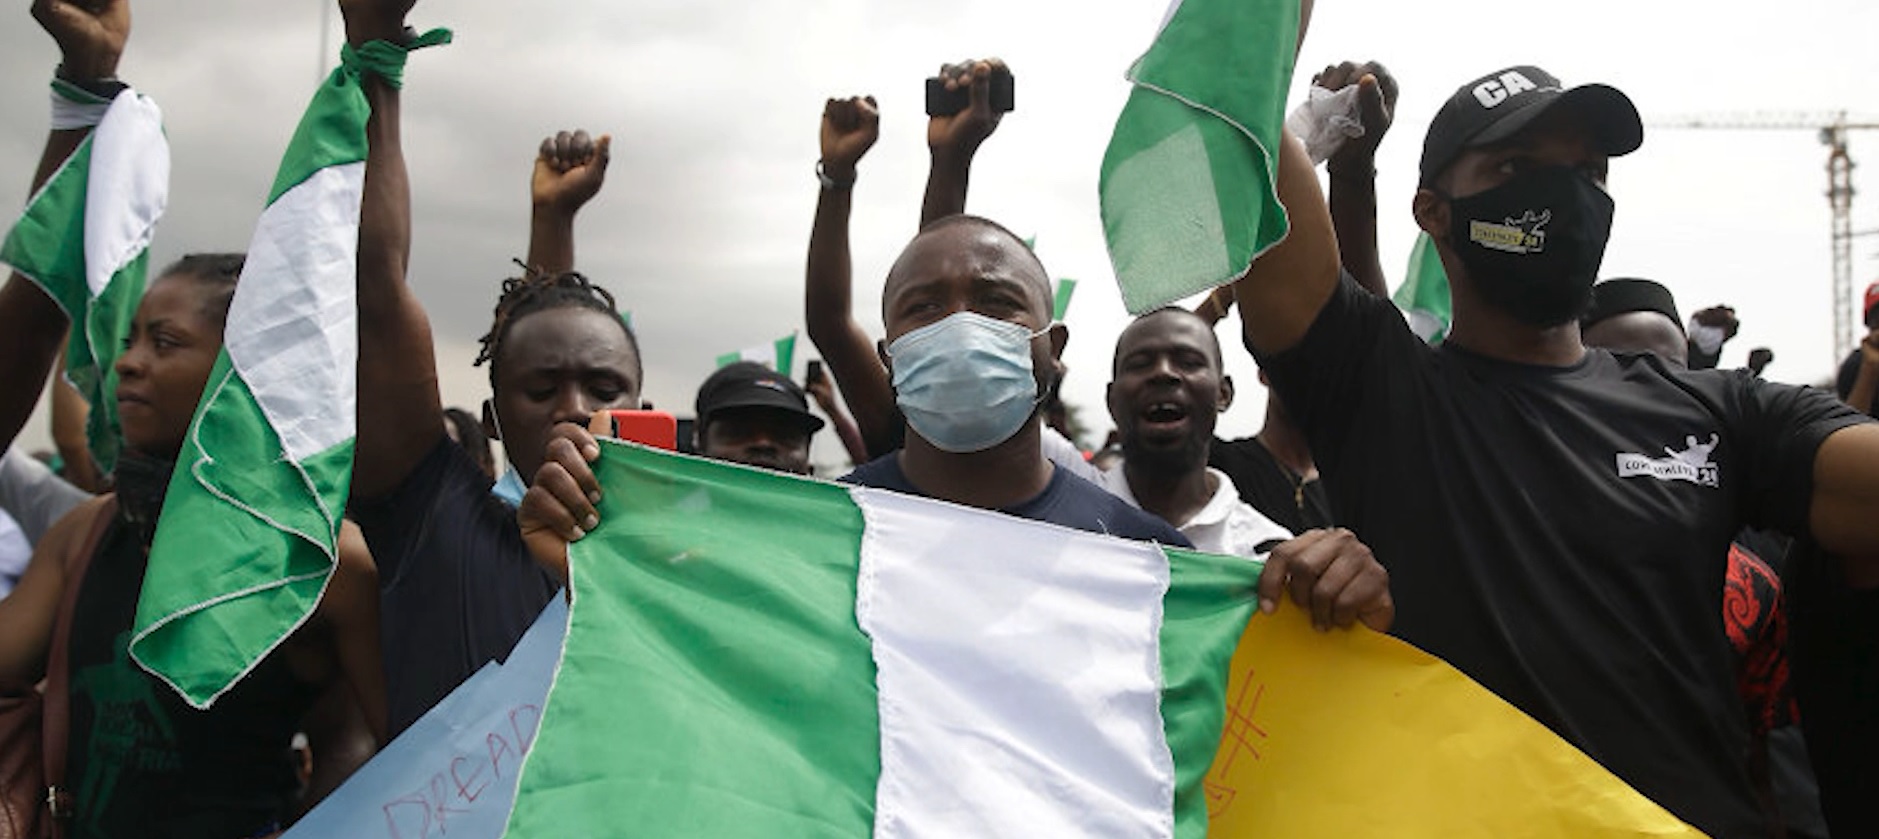 प्रहरीले चलाएको गोली लागेर नाइजेरियामा कम्तिमा २० जनाको प्रदर्शनकारीको मृत्यु